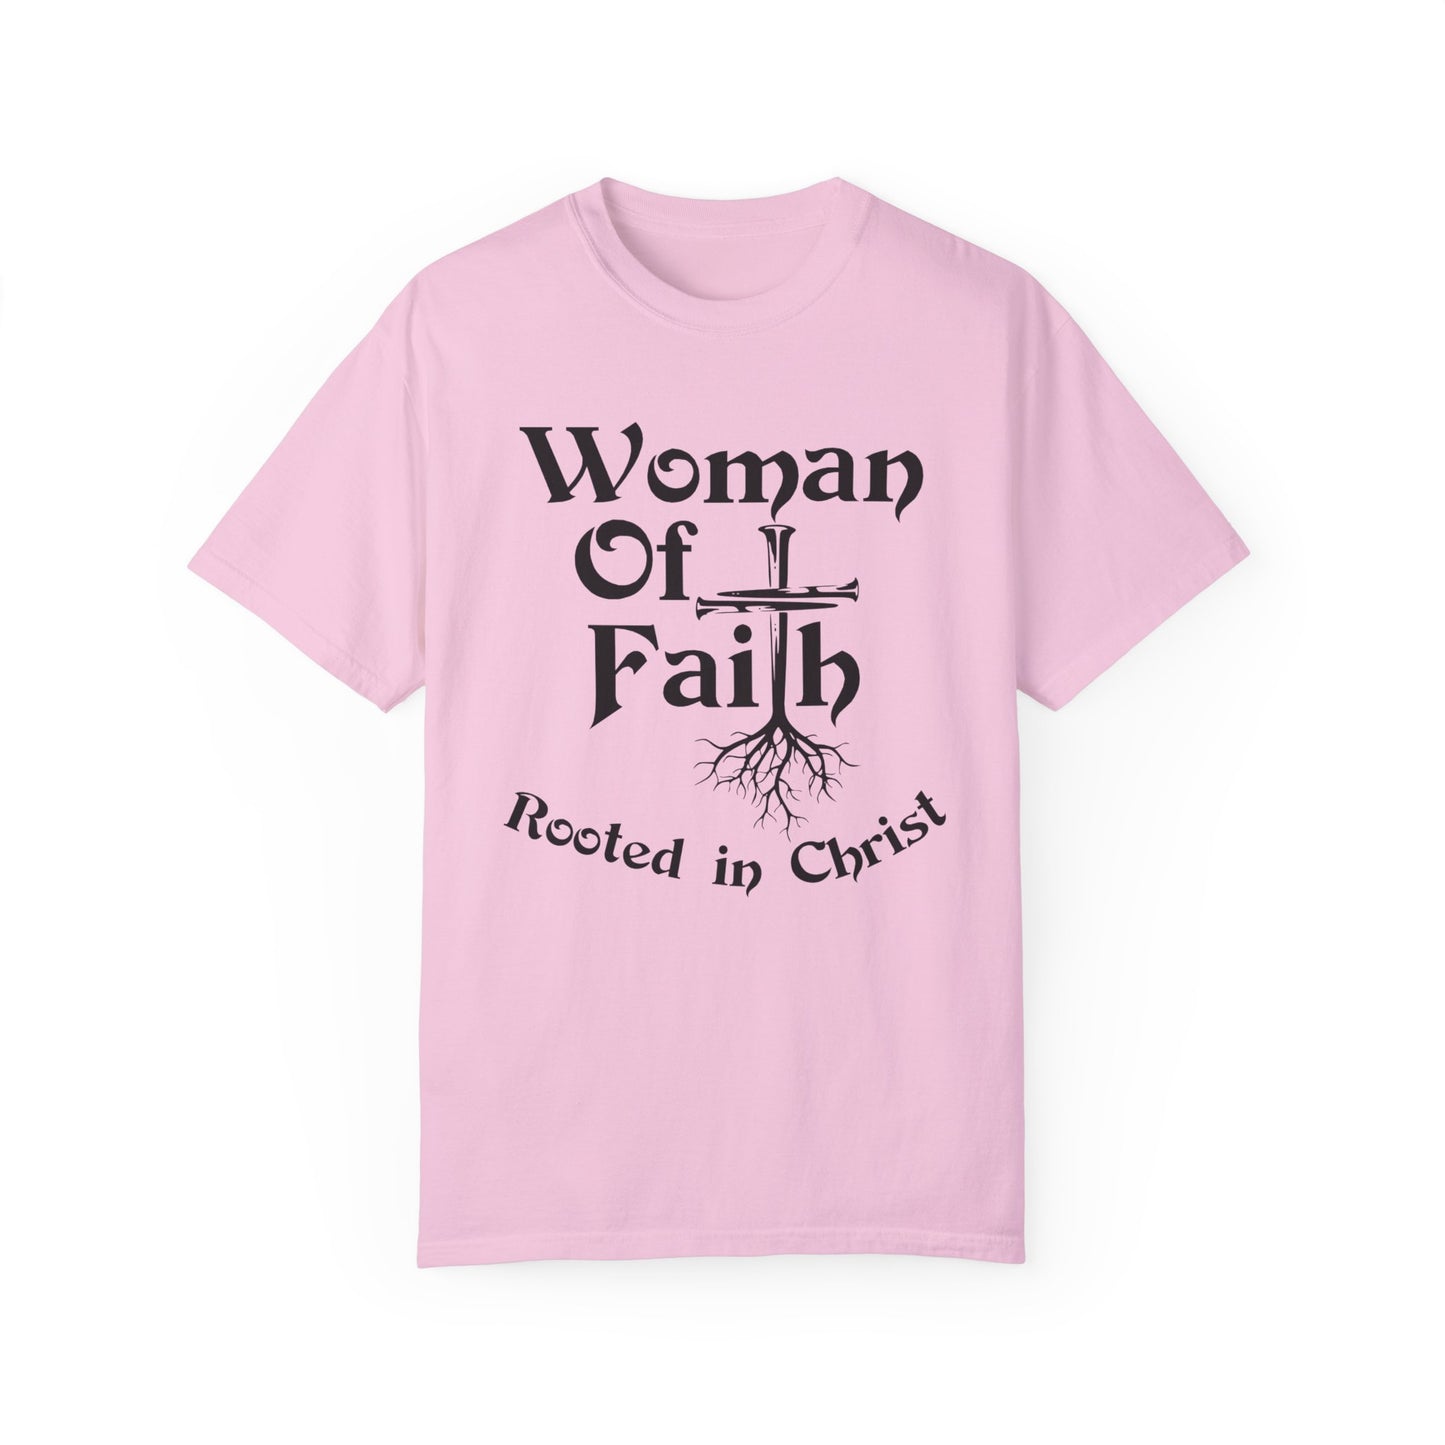 Woman of Faith T-shirt